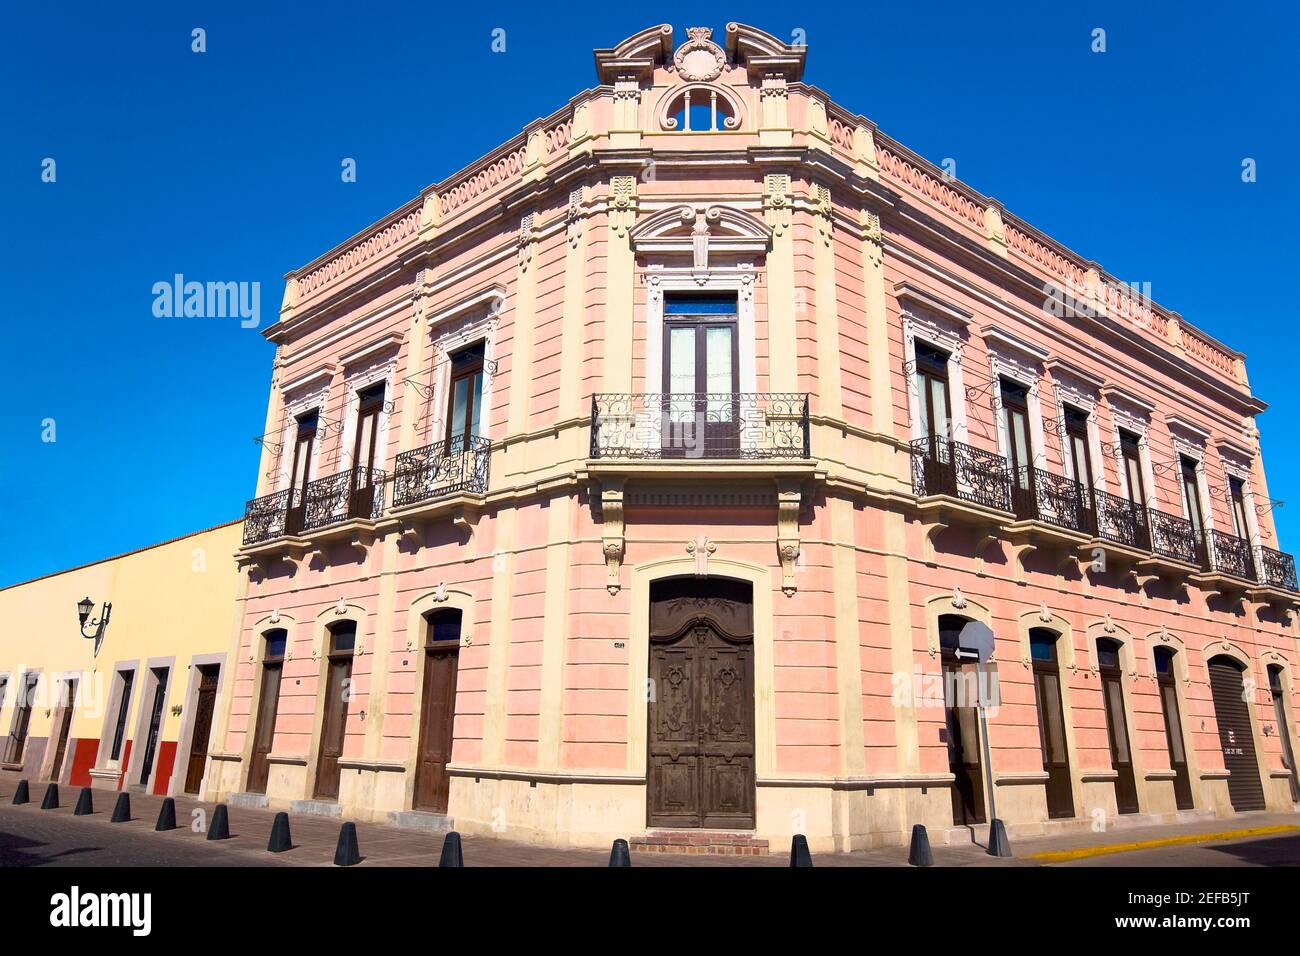 Facade of a building, Aguascalientes, Mexico Stock Photo